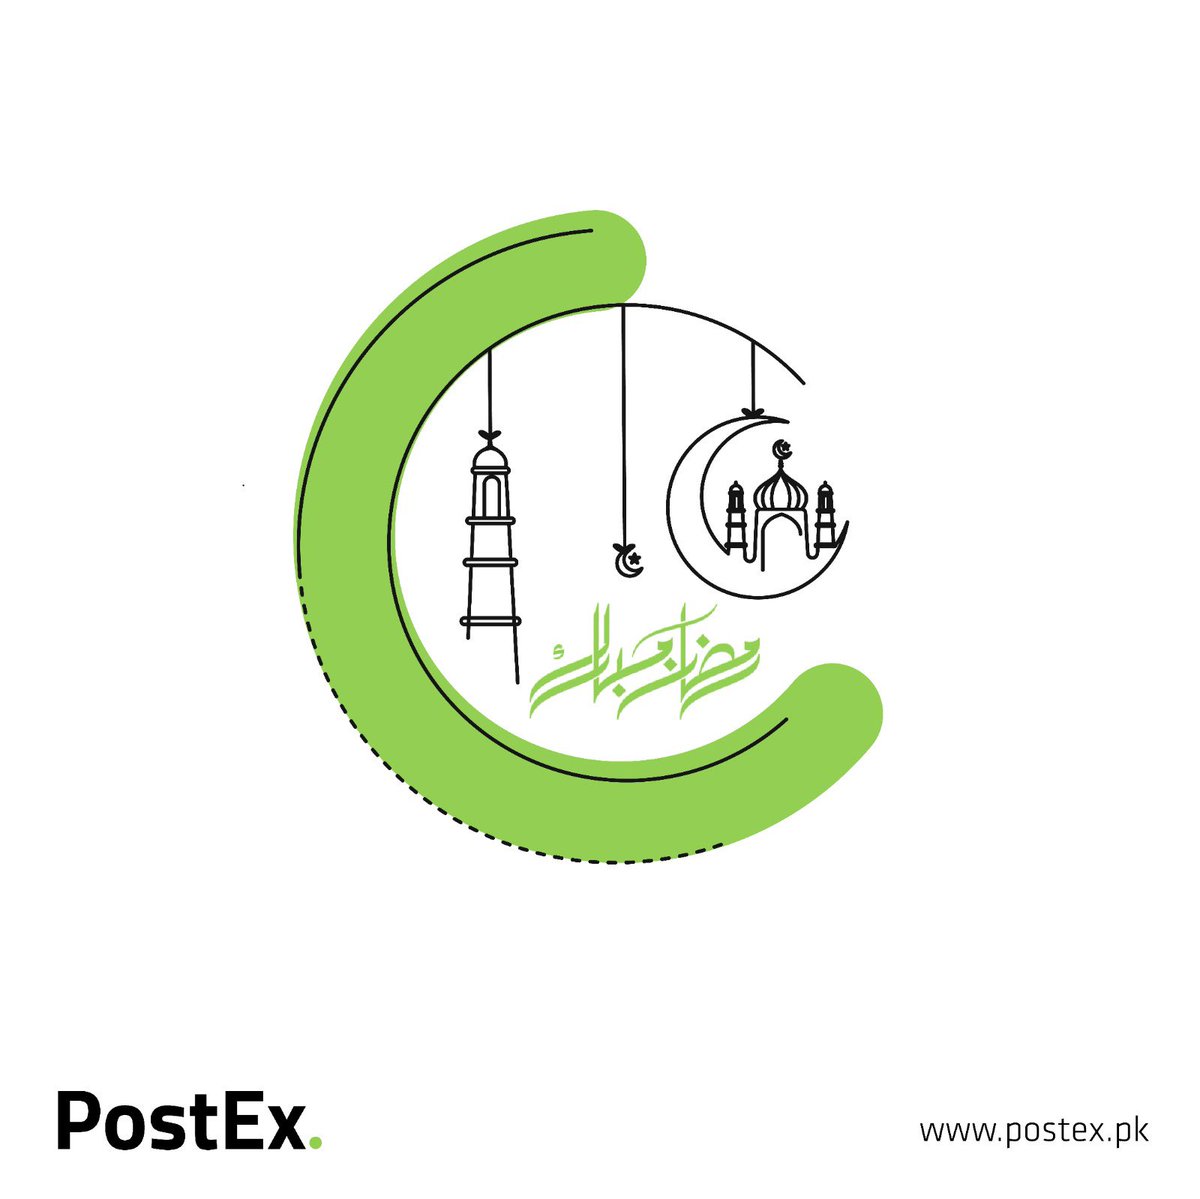 Ramadan Mubarak! 🌙 May this holy month brings you peace, prosperity, and happiness. #PostEx #RamadanMubarak